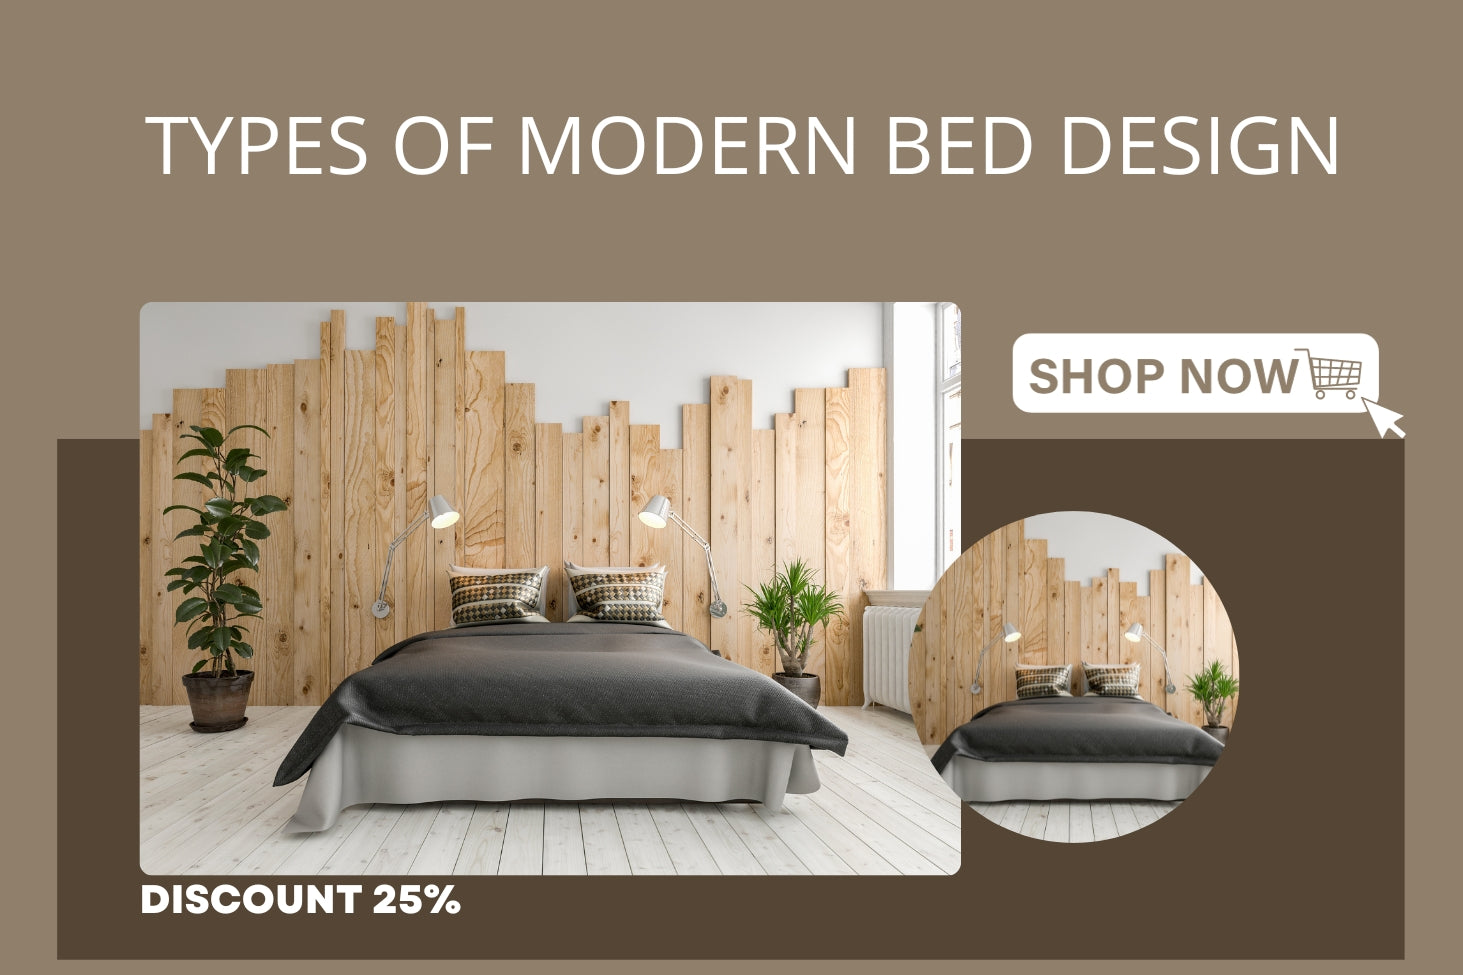 Types of Modern Bed Design